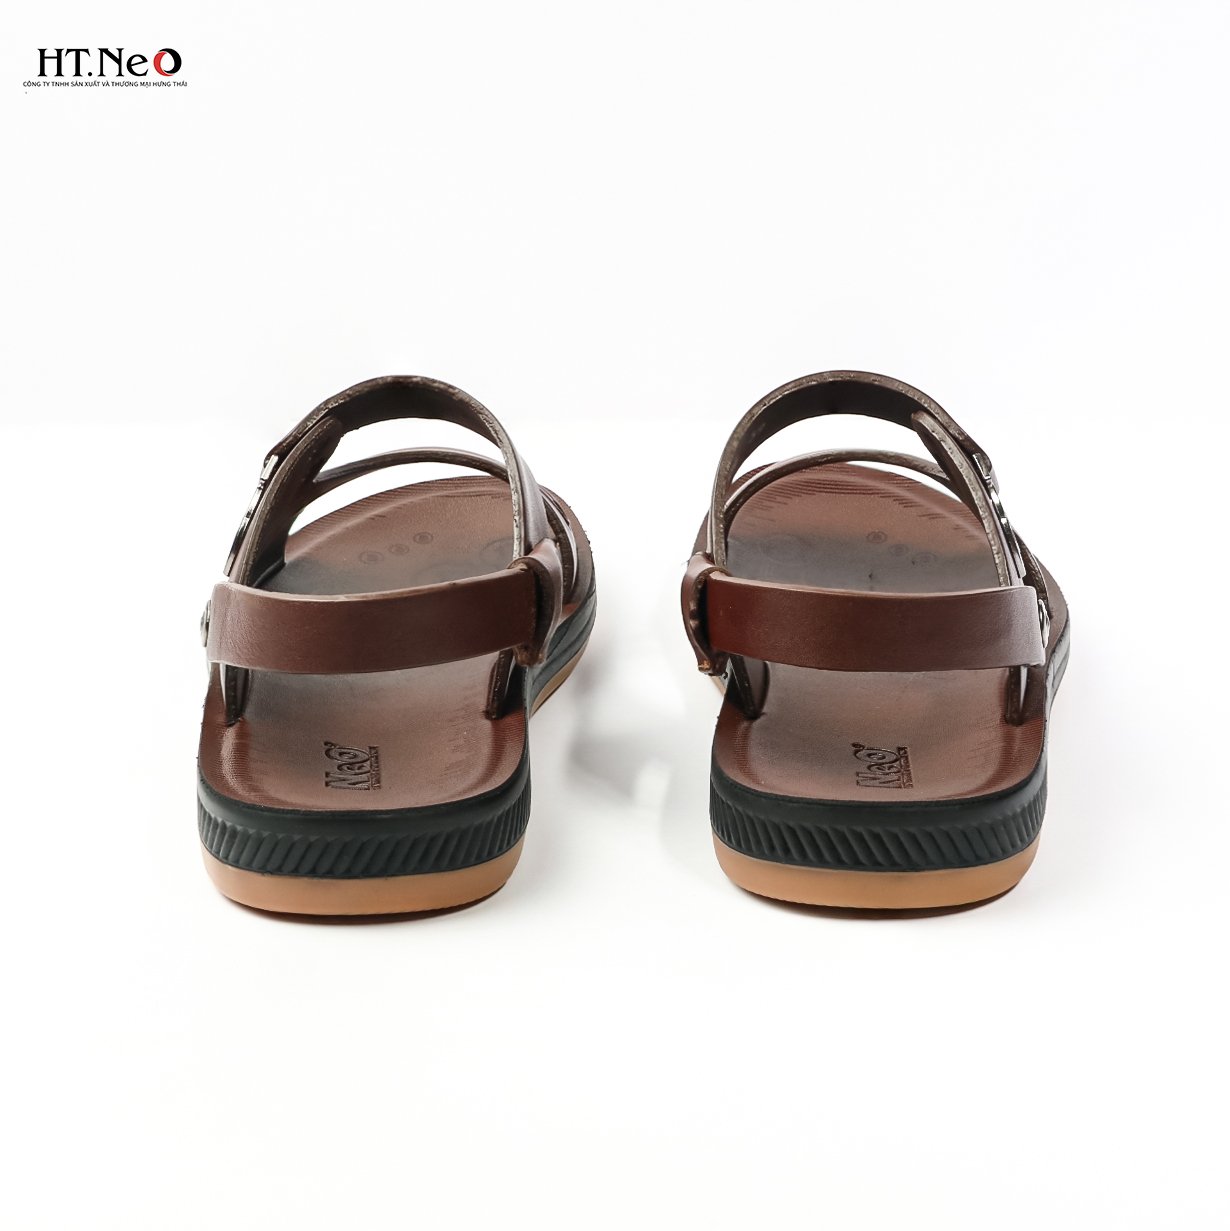 Sandal nam đế cao - dép sandal da nam HT.NEO  kiểu dáng đơn giản, màu sắc nhã nhặn, đi rất mềm SD70